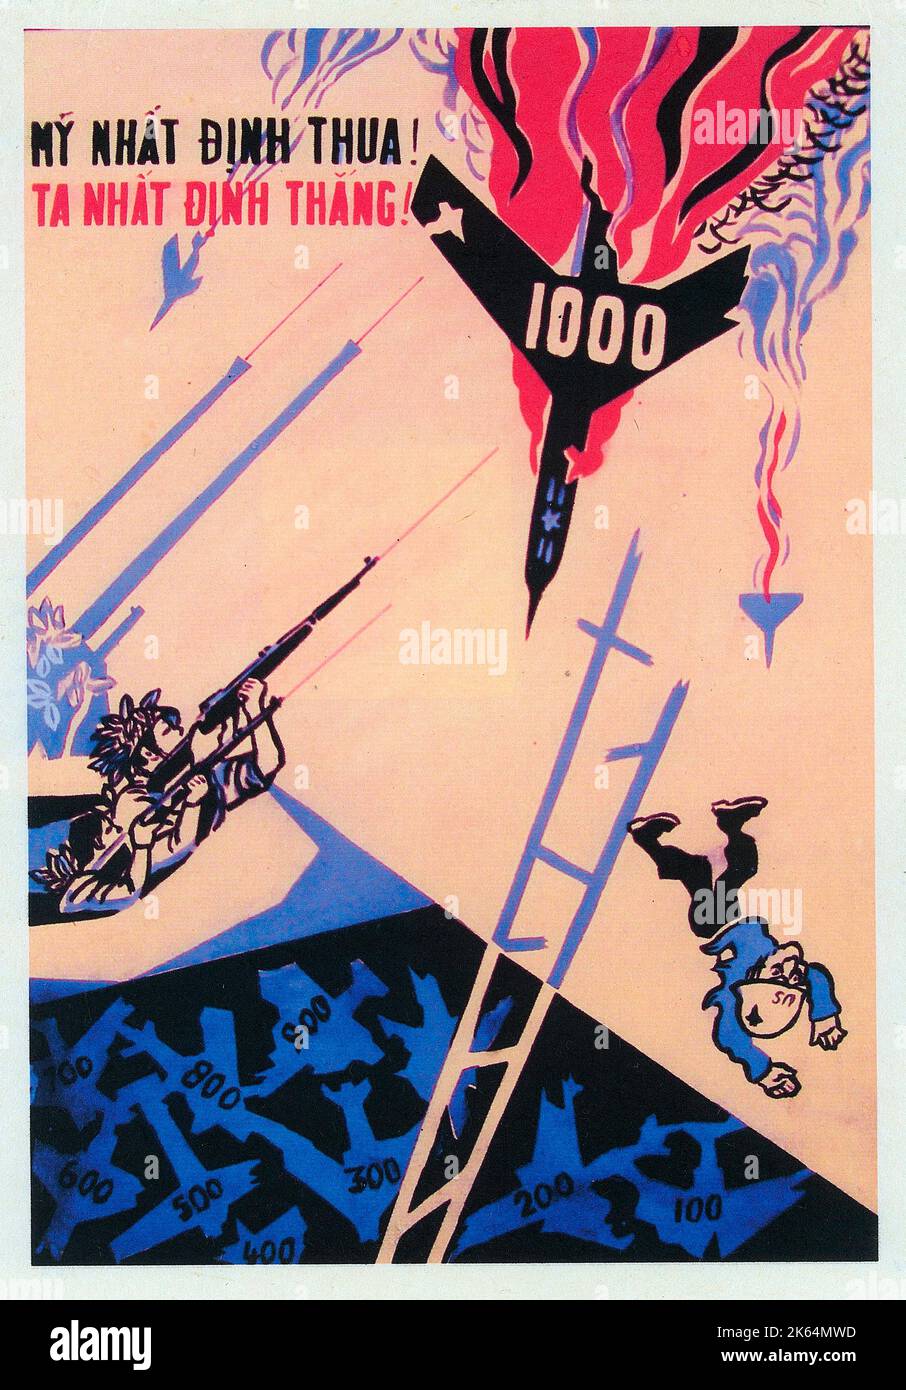 Vietnamkrieg - Vietnamesisches Patriotisches Plakat - "bestimmte Verlierer" - die Amerikaner haben angeblich 1000 Flugzeuge verloren, die von der Viet Cong abgeschossen wurden. Die Leiter zum US-Sieg bricht von einer Stufe zur anderen... Datum: 2. die Hälfte des 20.. Jahrhunderts Stockfoto